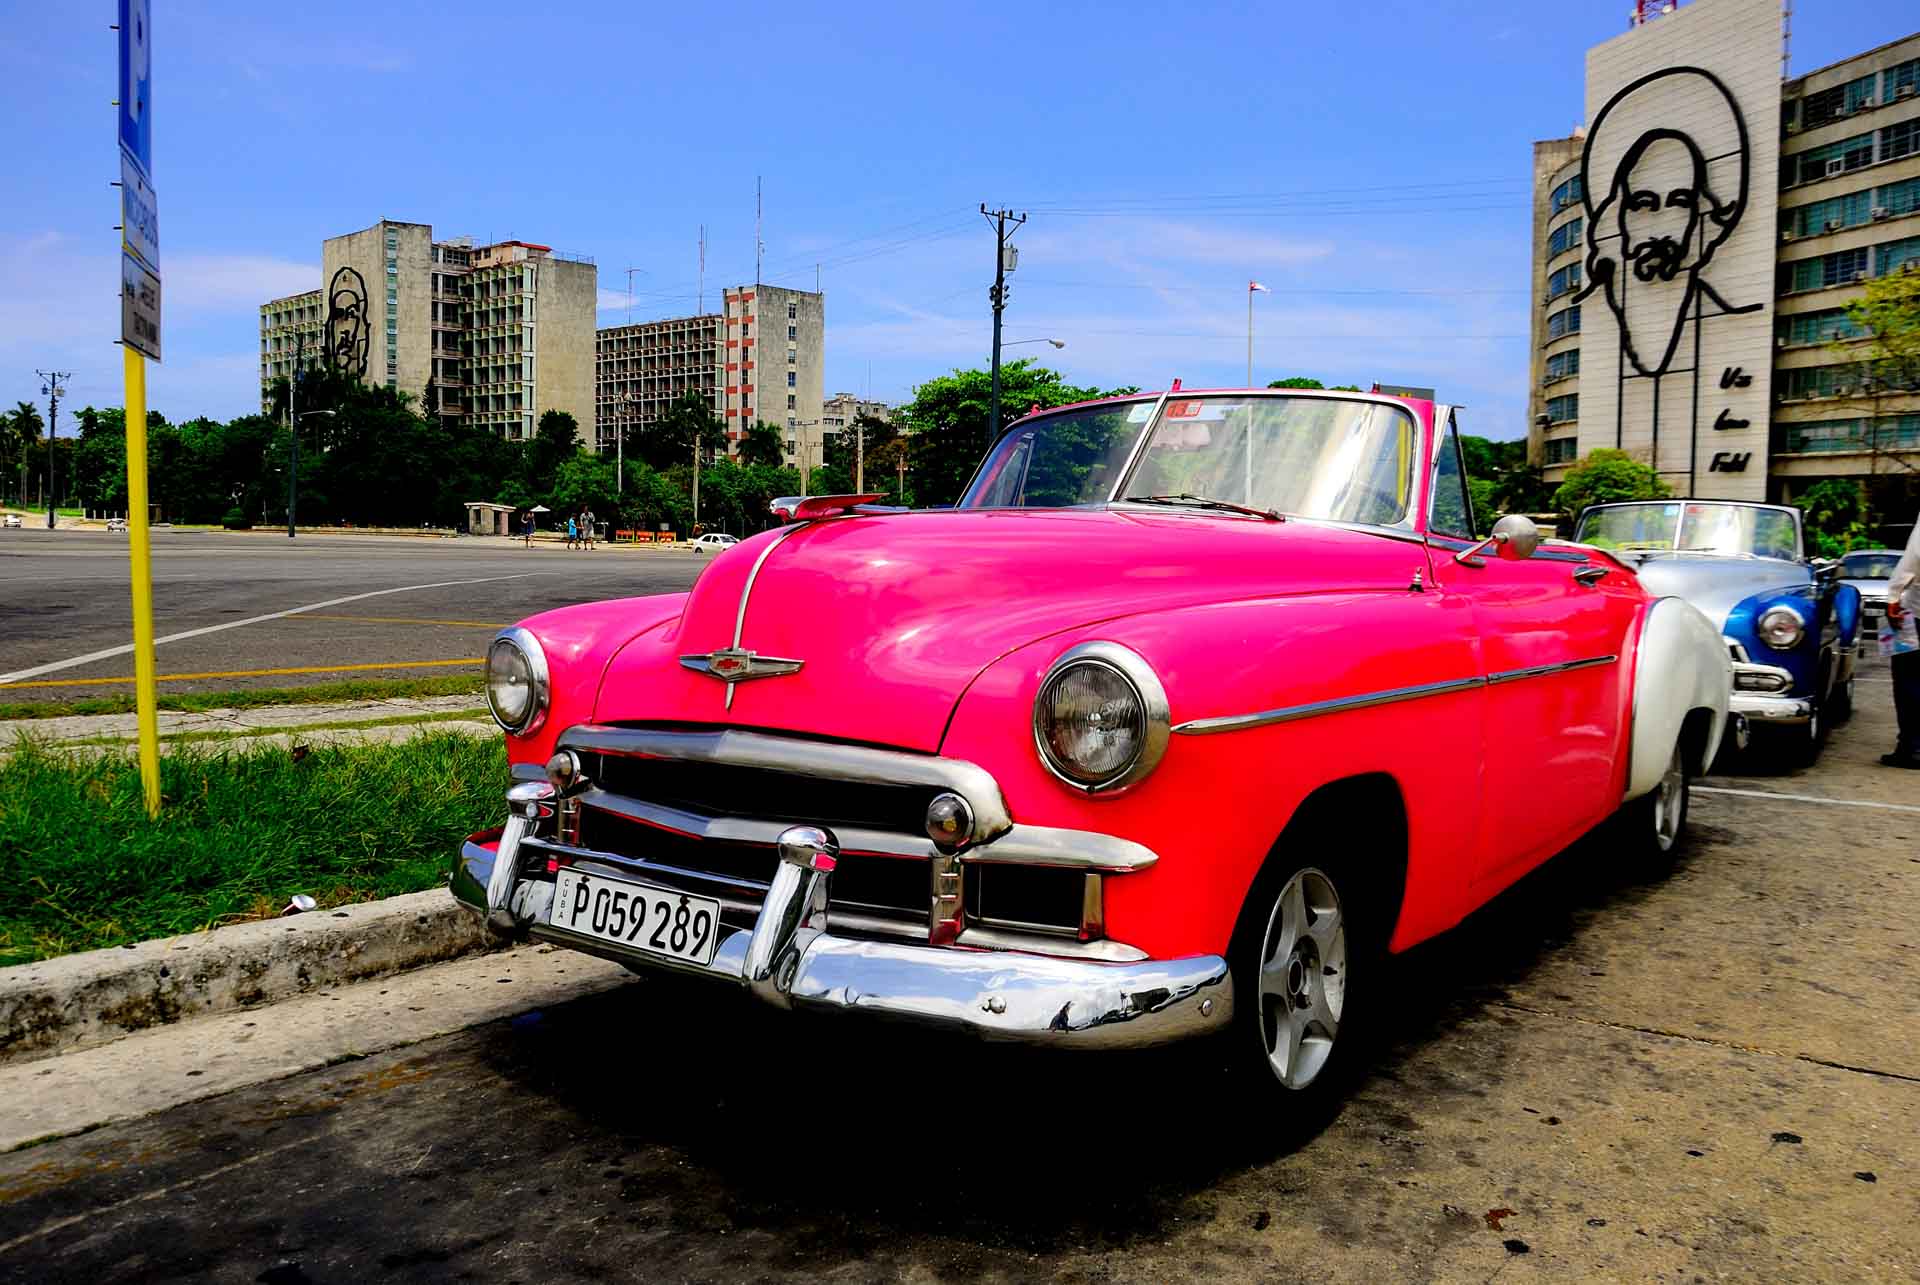 Havana Cuba Vintage Car 9, havana, cuba, pescart, photo blog, travel blog, blog, photo travel blog, enrico pescantini, pescantini